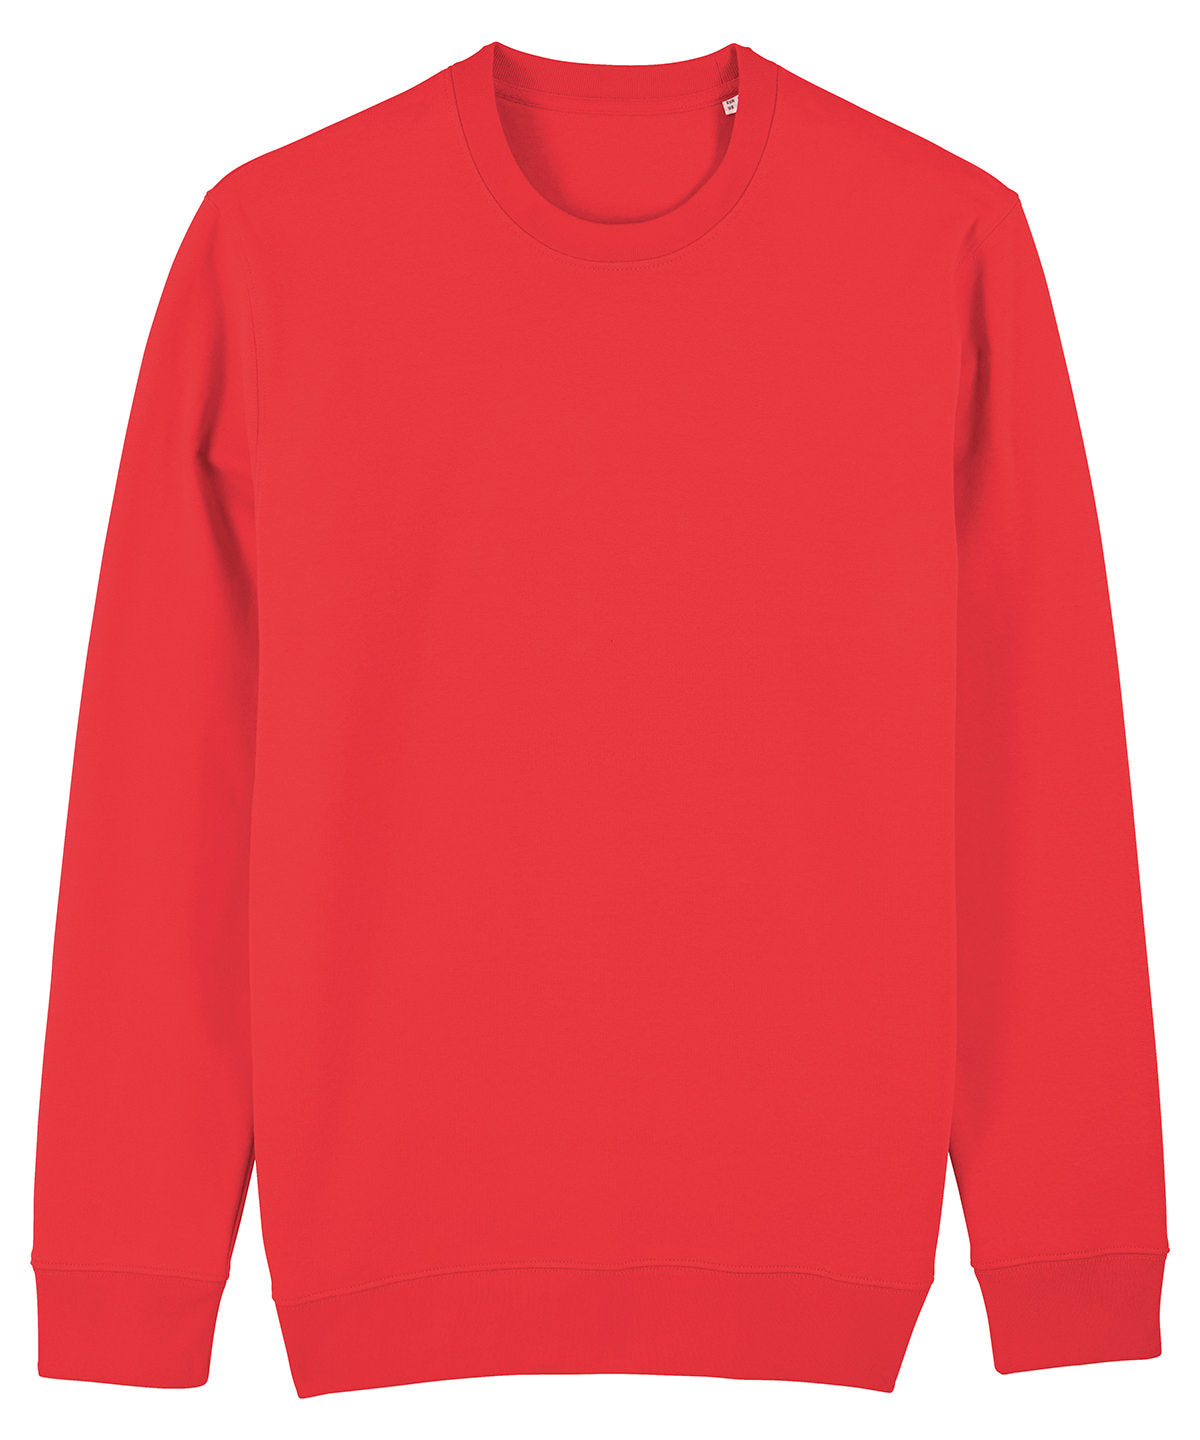 Stanley/Stella Unisex Changer Iconic Crew Neck Sweatshirt Deck Chair Red